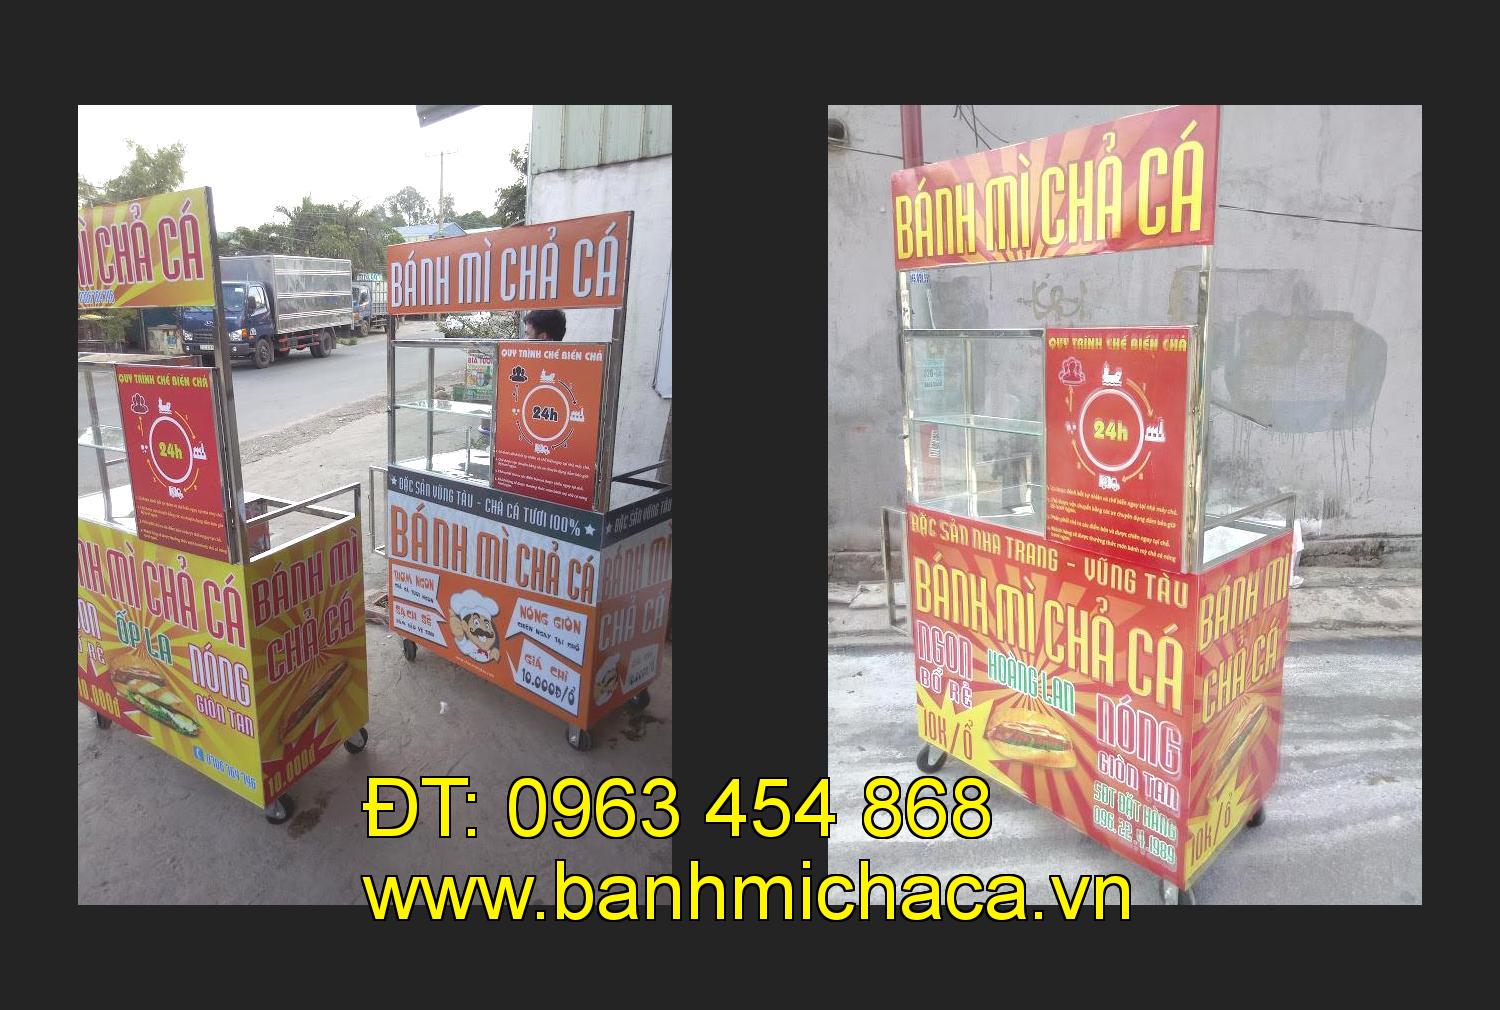 xe bánh mì chả cá giá rẻ tại tỉnh Lạng Sơn